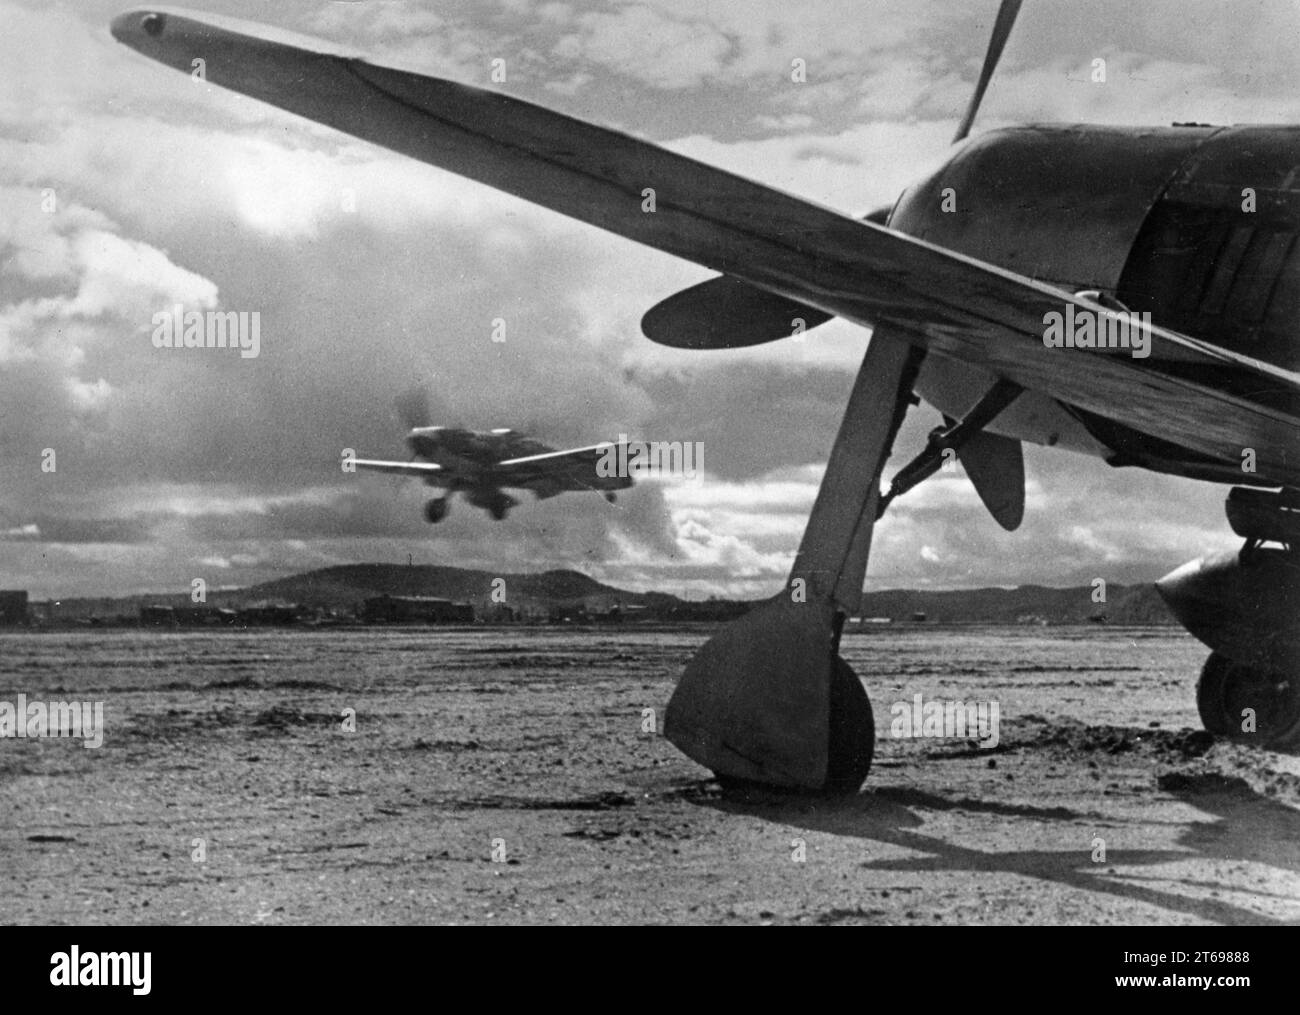 Sur la droite un Focke Wulf FW 190, sur la gauche un Messerschmitt Me BF 109 atterrit sur un terrain d'aviation au front en Finlande. [traduction automatique] Banque D'Images